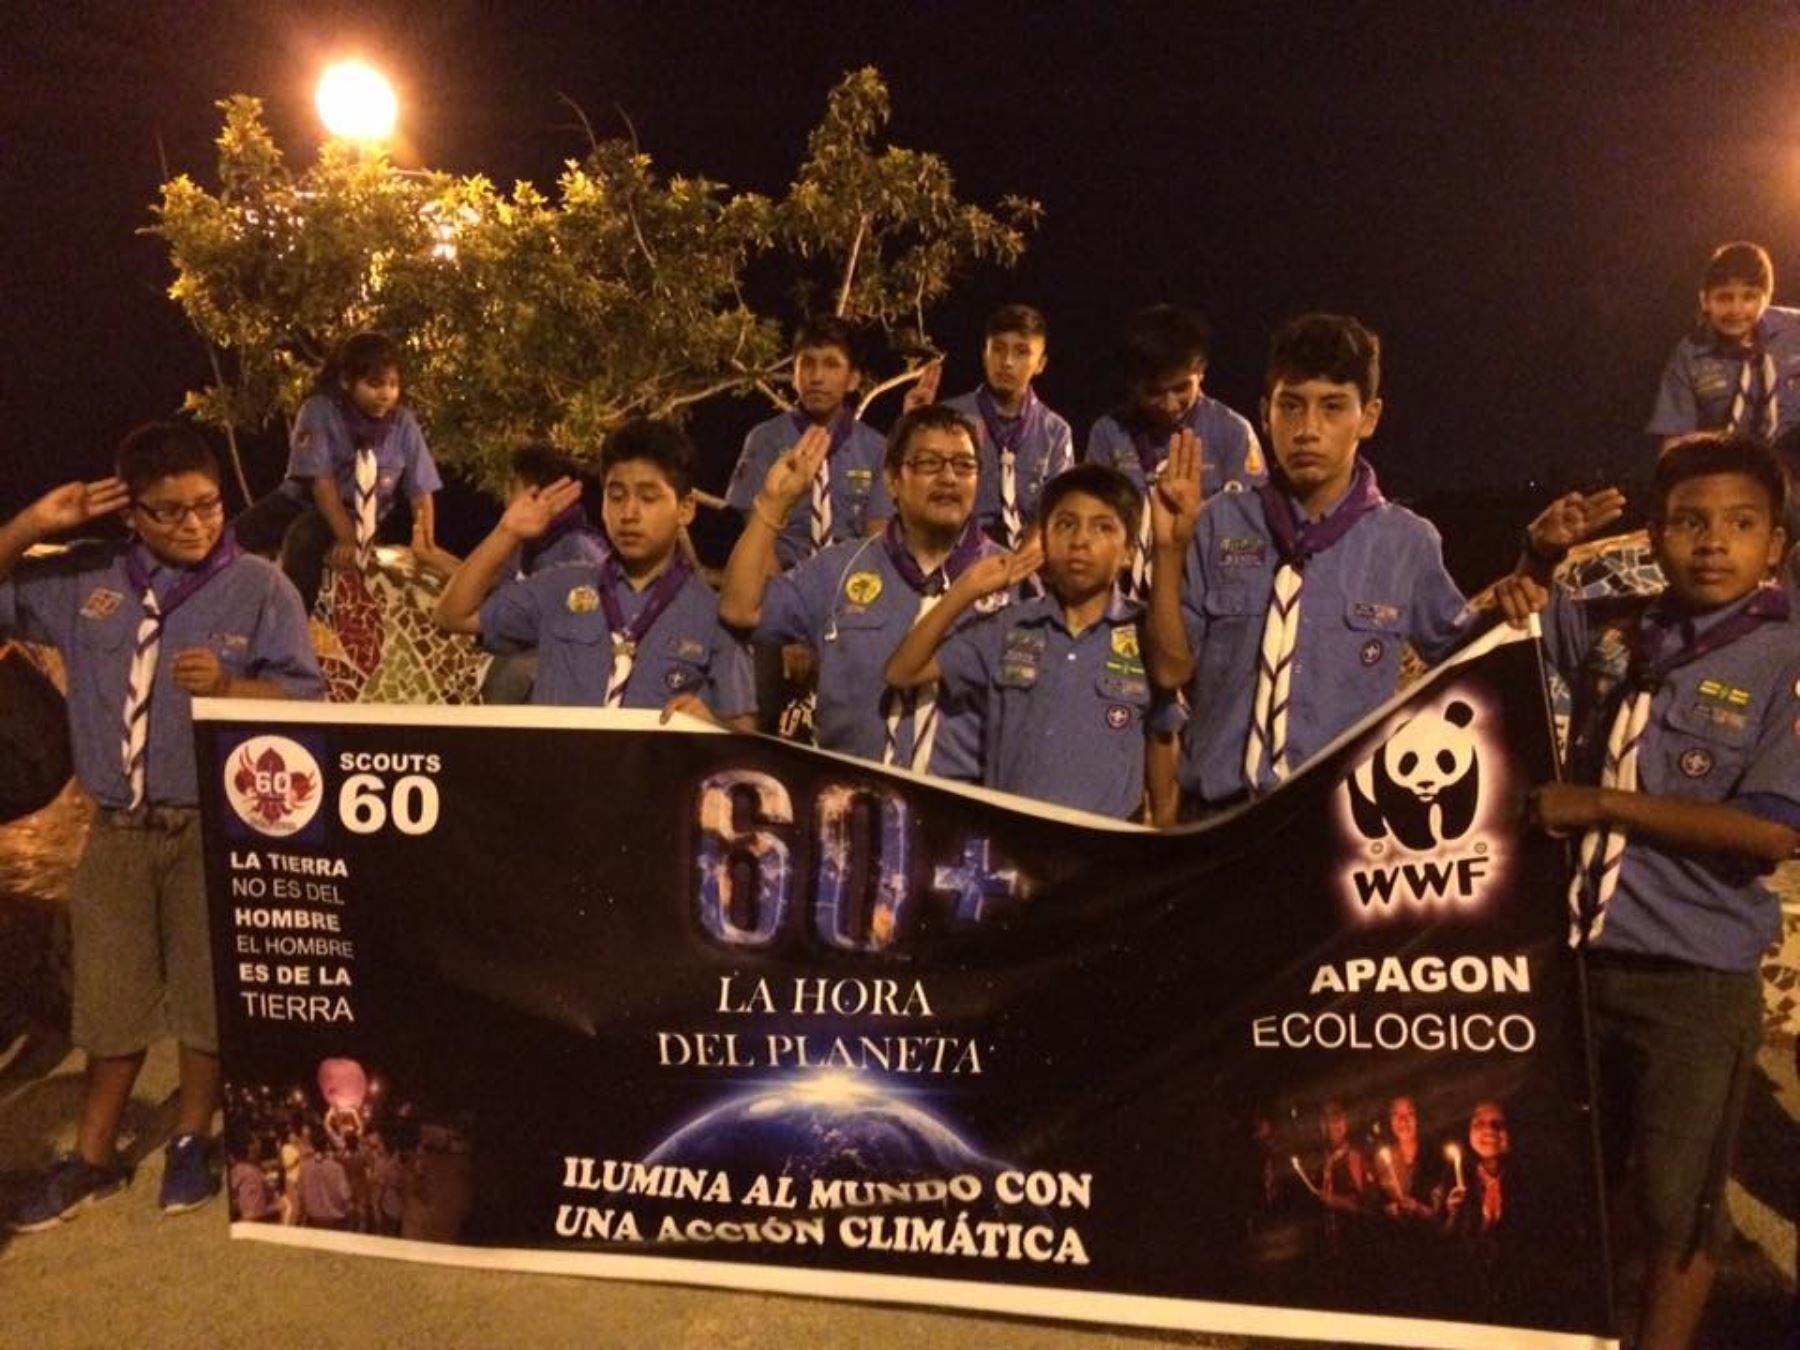 Scouts participaron activamente en la Hora del Planeta. Foto: Andina/difusión.